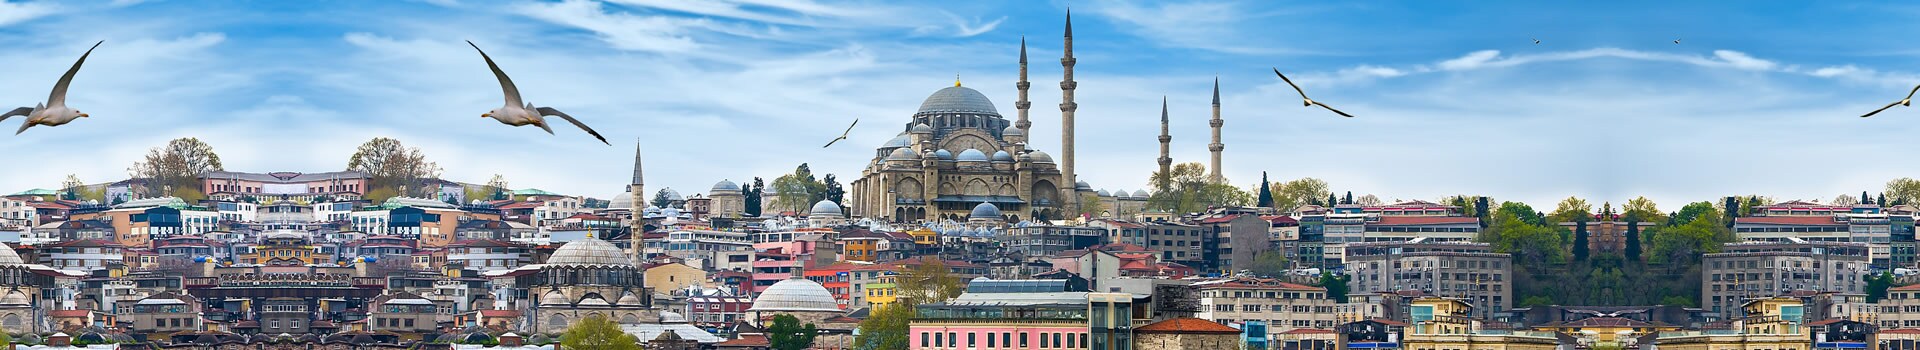 Mosca - Istanbul